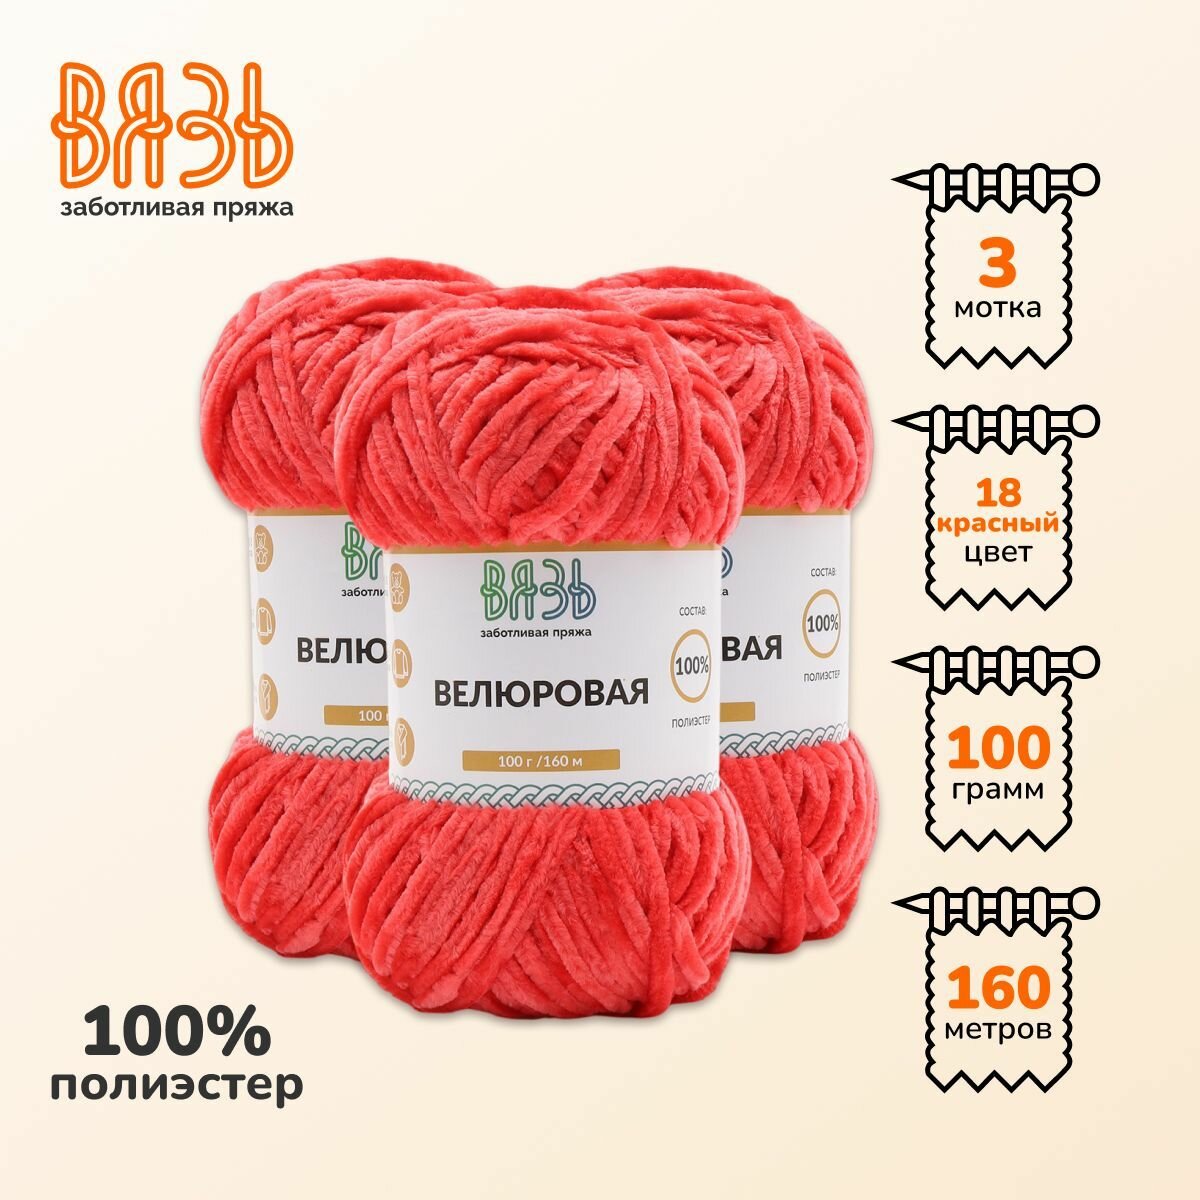 Пряжа для вязания Вязь 'Велюровая' 100г, 160м (100% полиэстер) (18 красный), 3 мотка